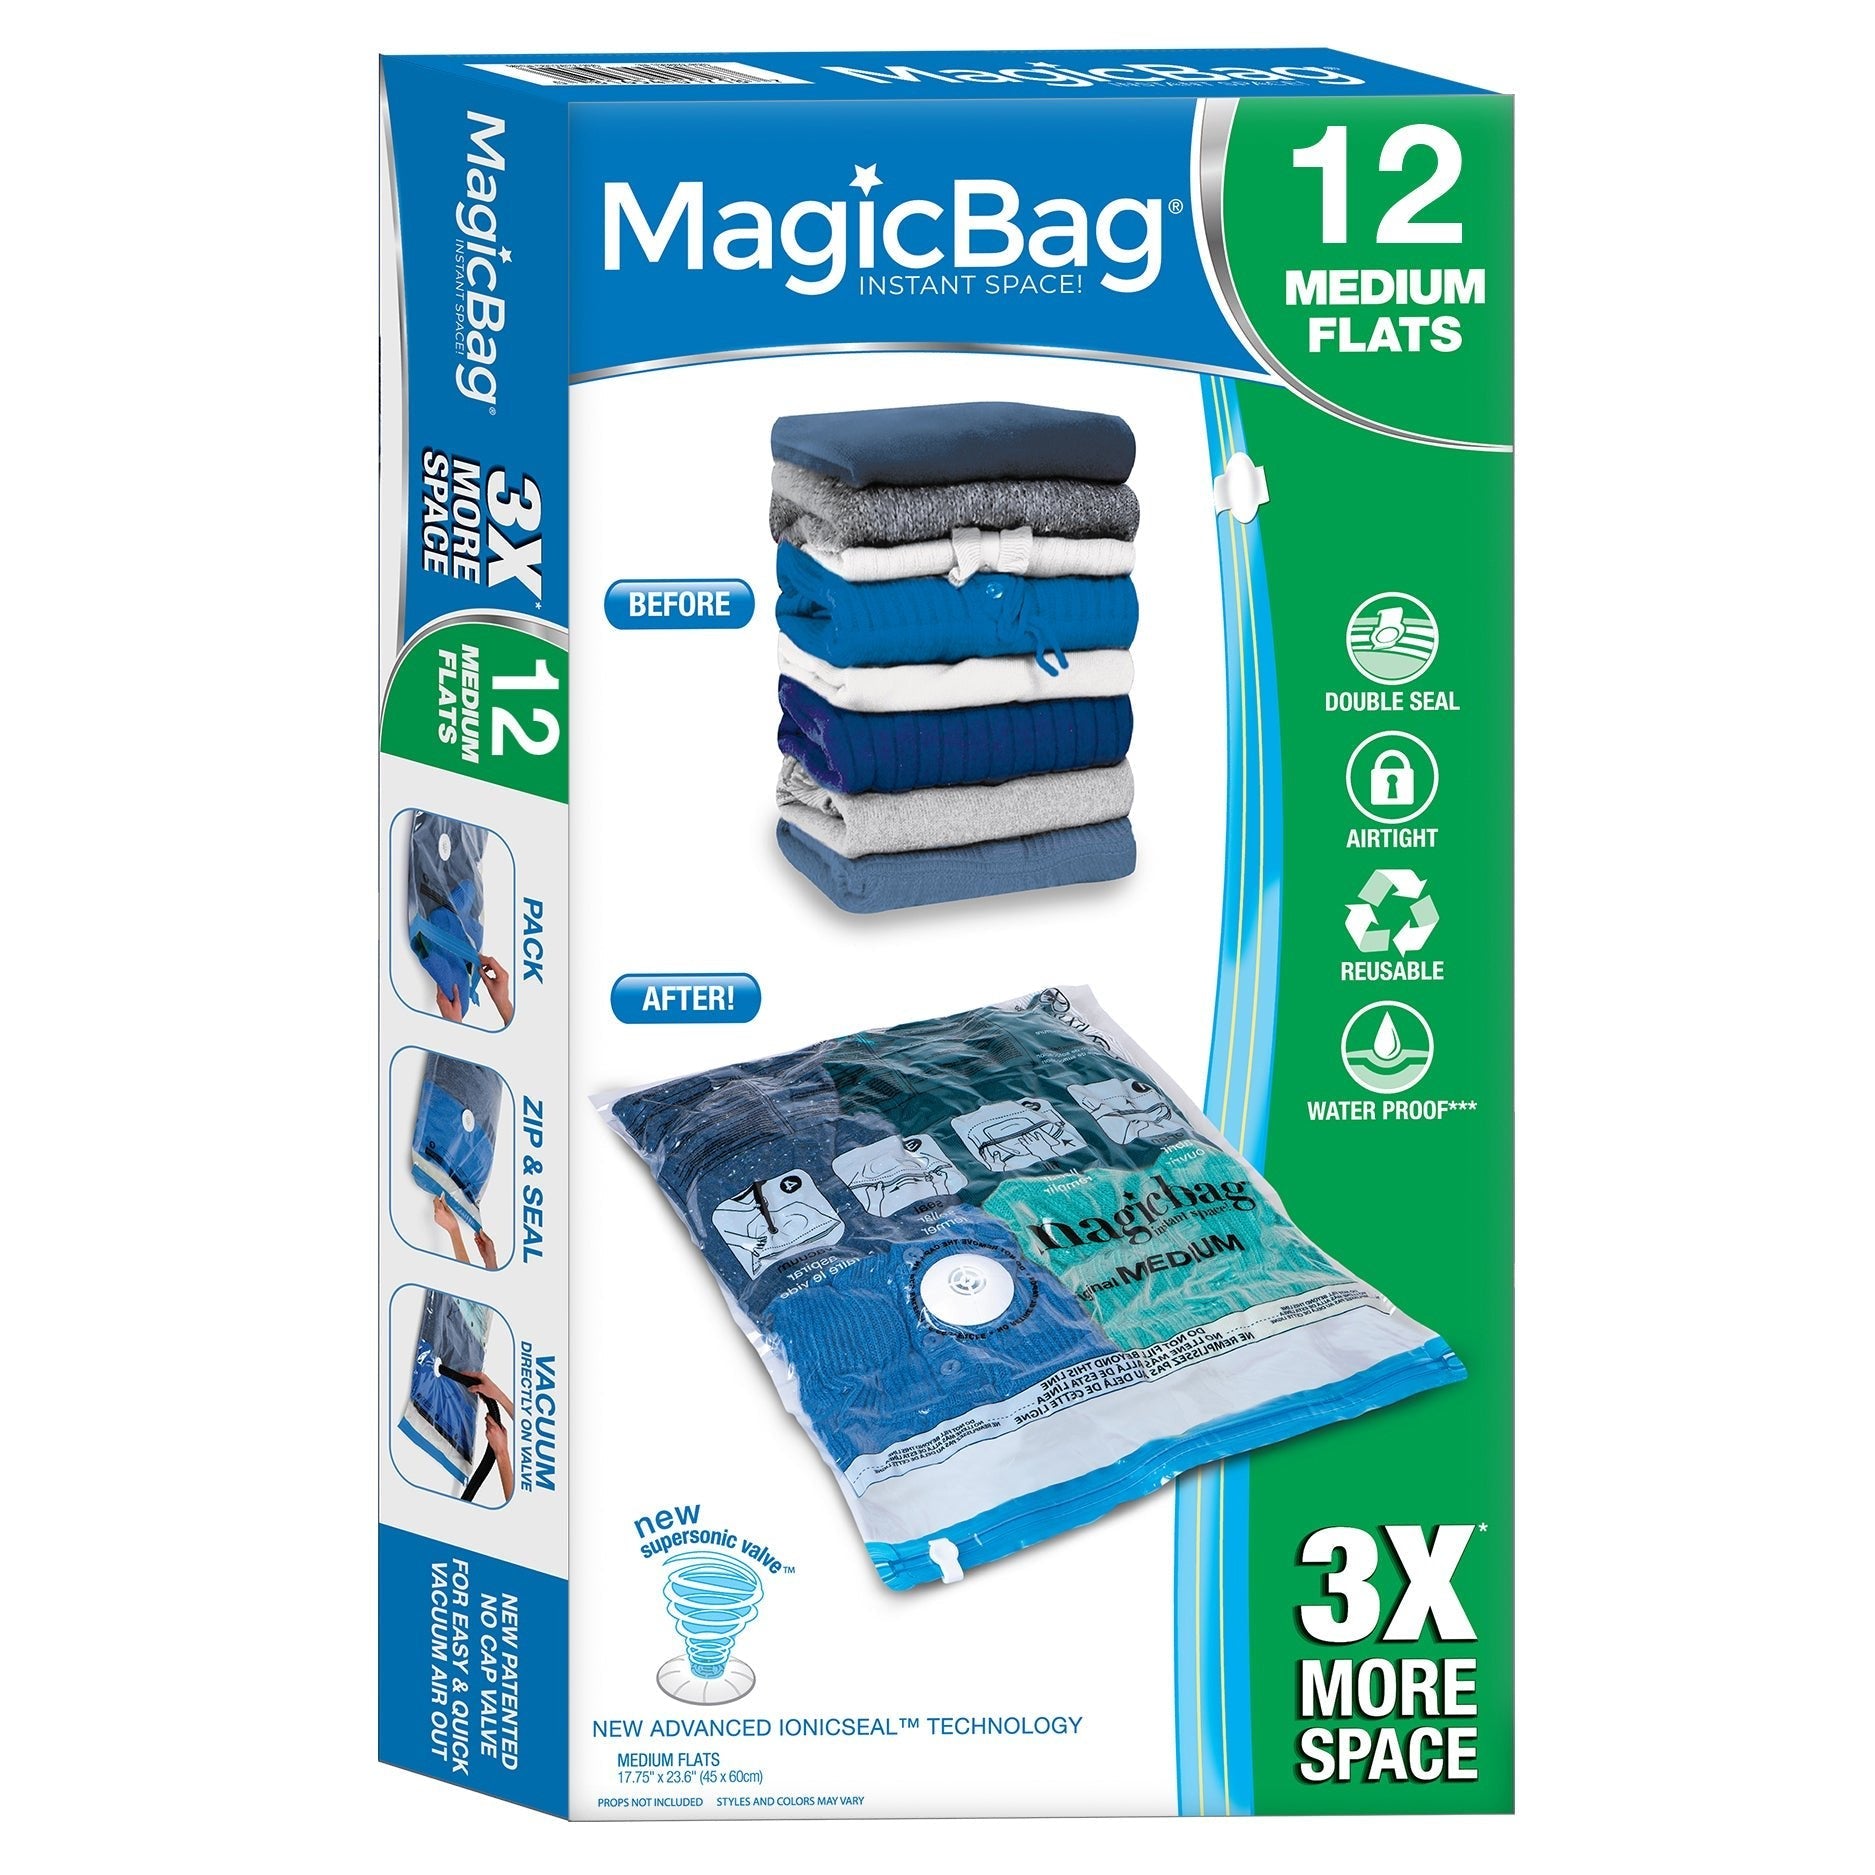 https://www.shopsmartdesign.com/cdn/shop/products/magicbag-instant-space-saver-storage-flat-medium-smart-design-magicbag-5912412as4-incrementing-number-315011.jpg?v=1679340461